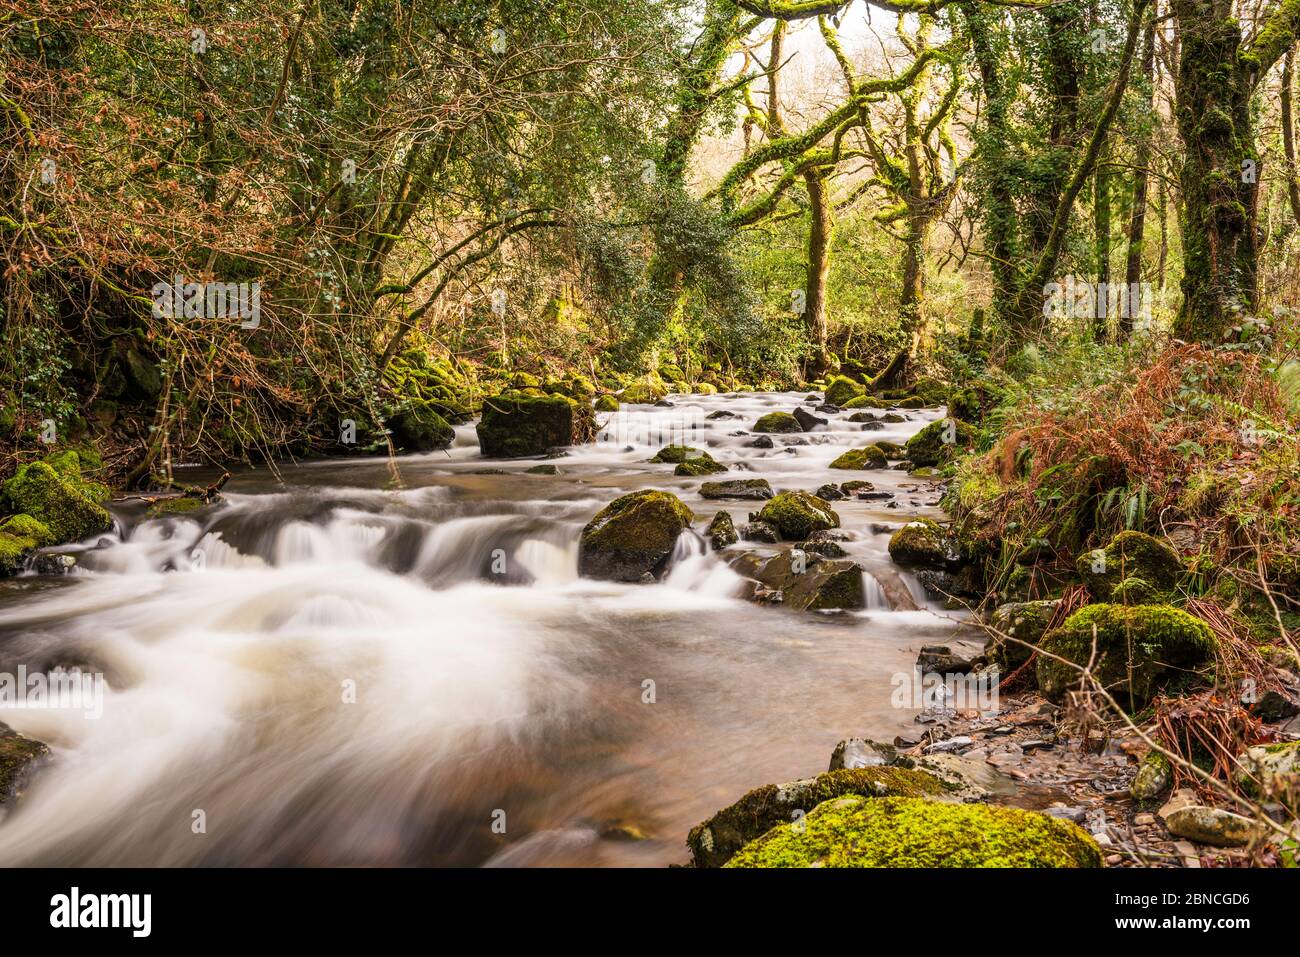 La rivière Okement est en chute de Dartmoor à travers West Cleave près d'Okehampton, Devon, Angleterre, Royaume-Uni. Banque D'Images